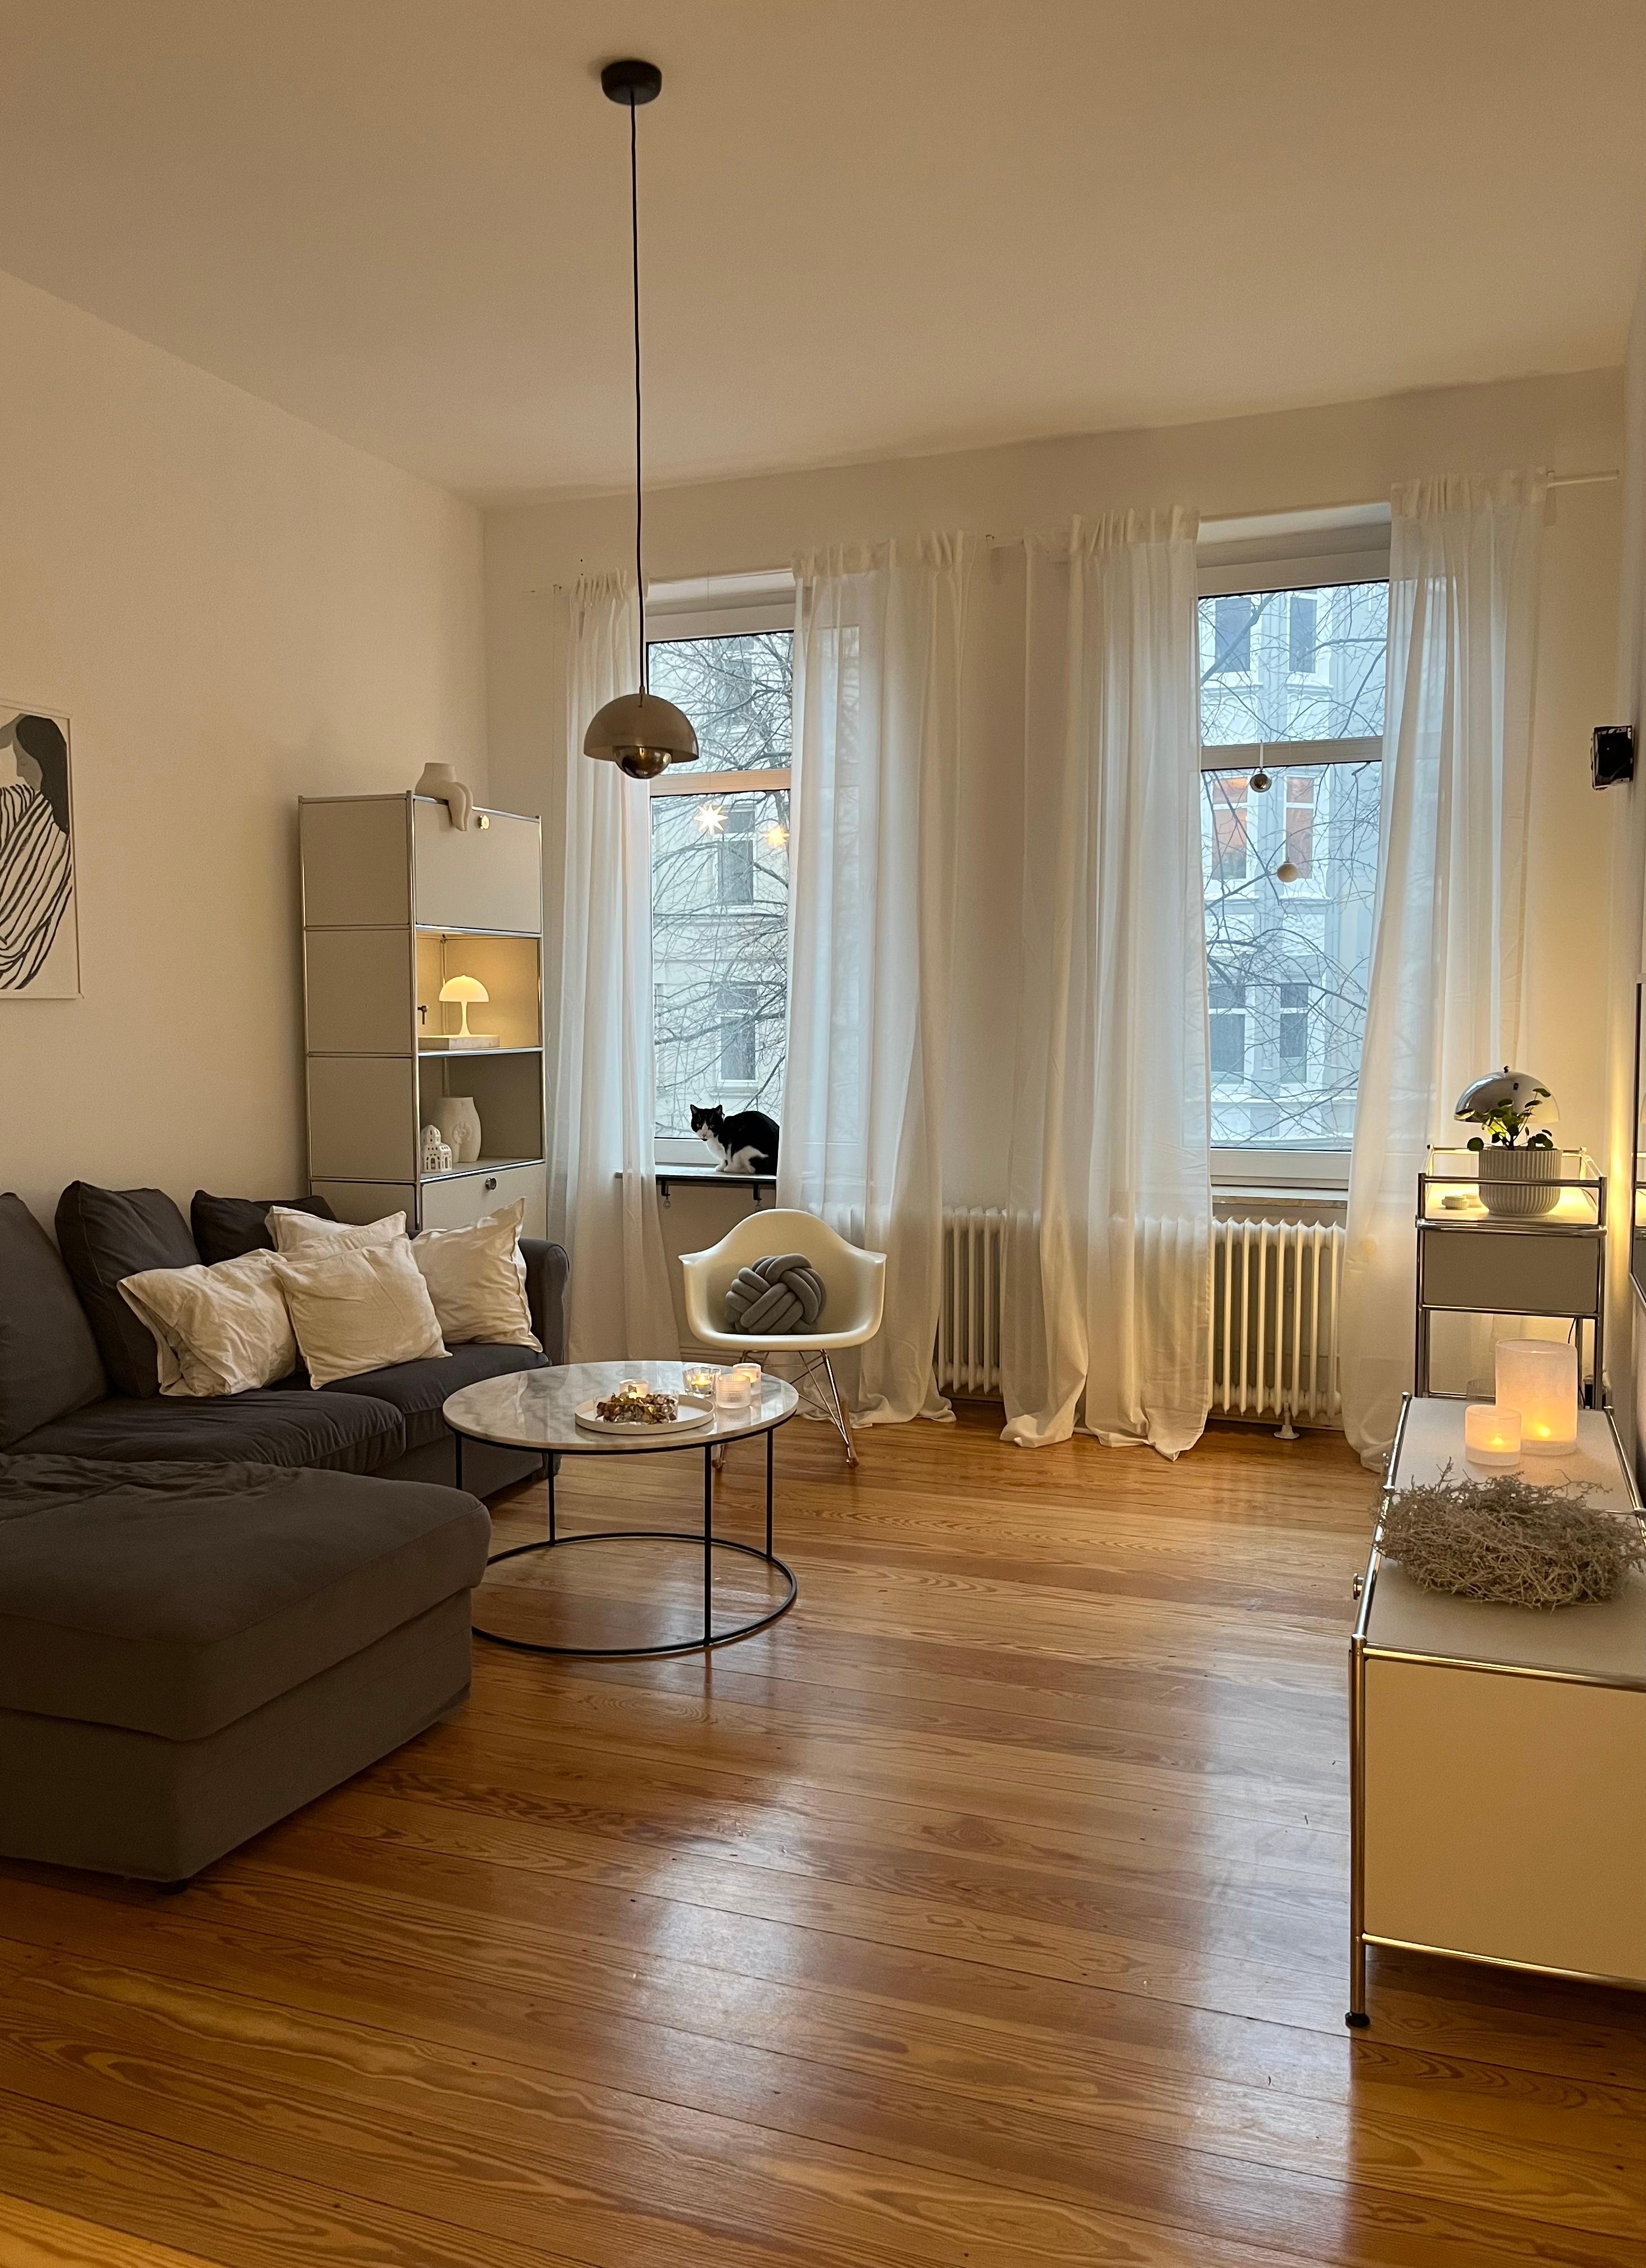 Happy Mittwoch ✨ #wohnzimmer #interiorinspo #skandinavischwohnen #danishdesign #altbauwohnung